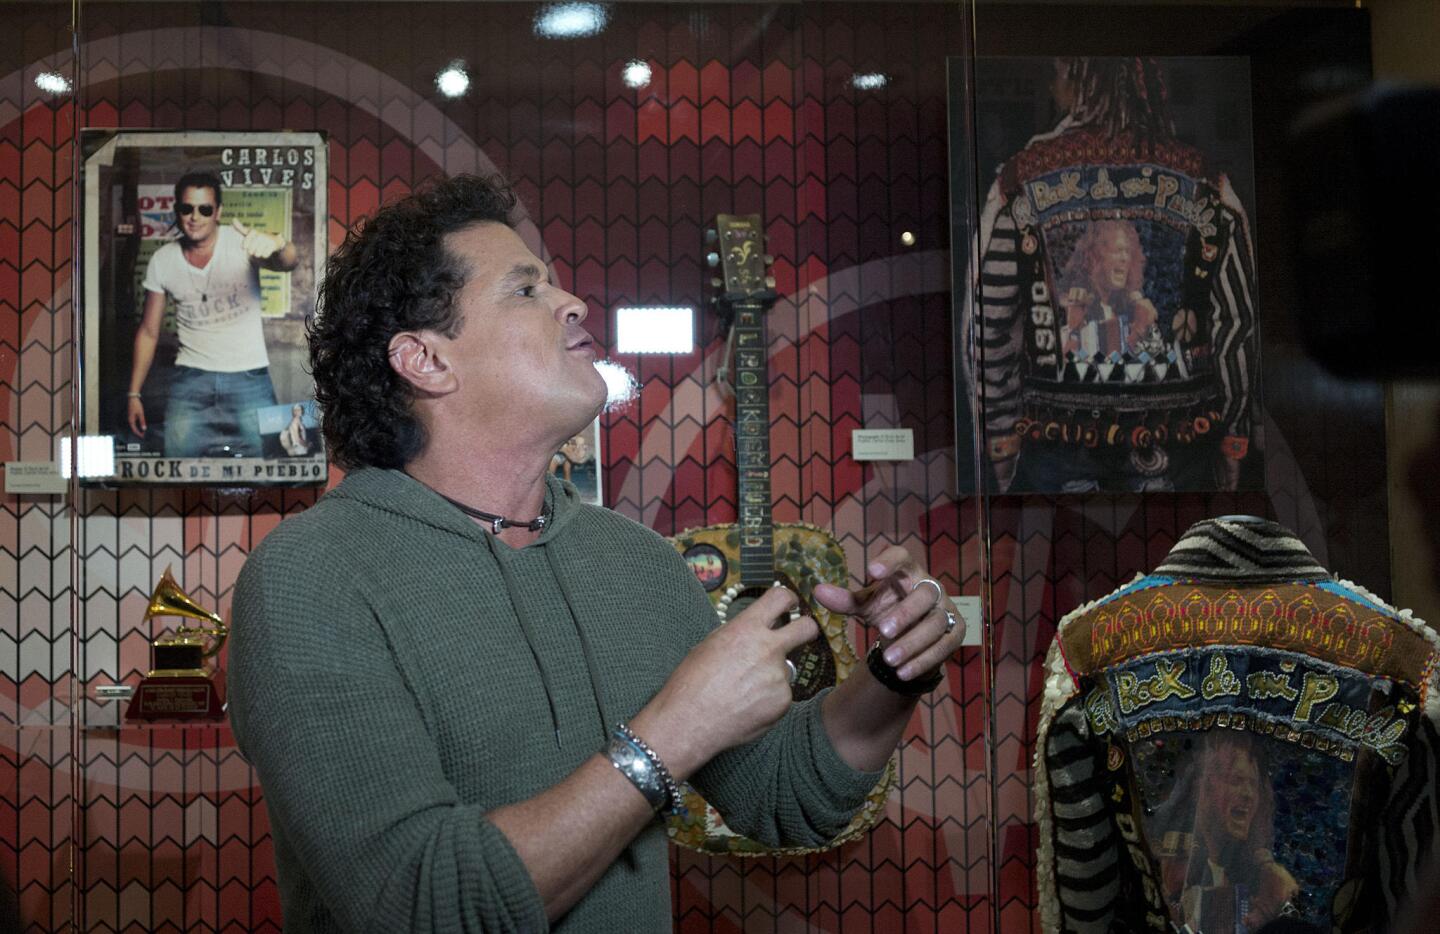 Museo de los Grammy acoge una exposición sobre la vida y obra de Carlos Vives